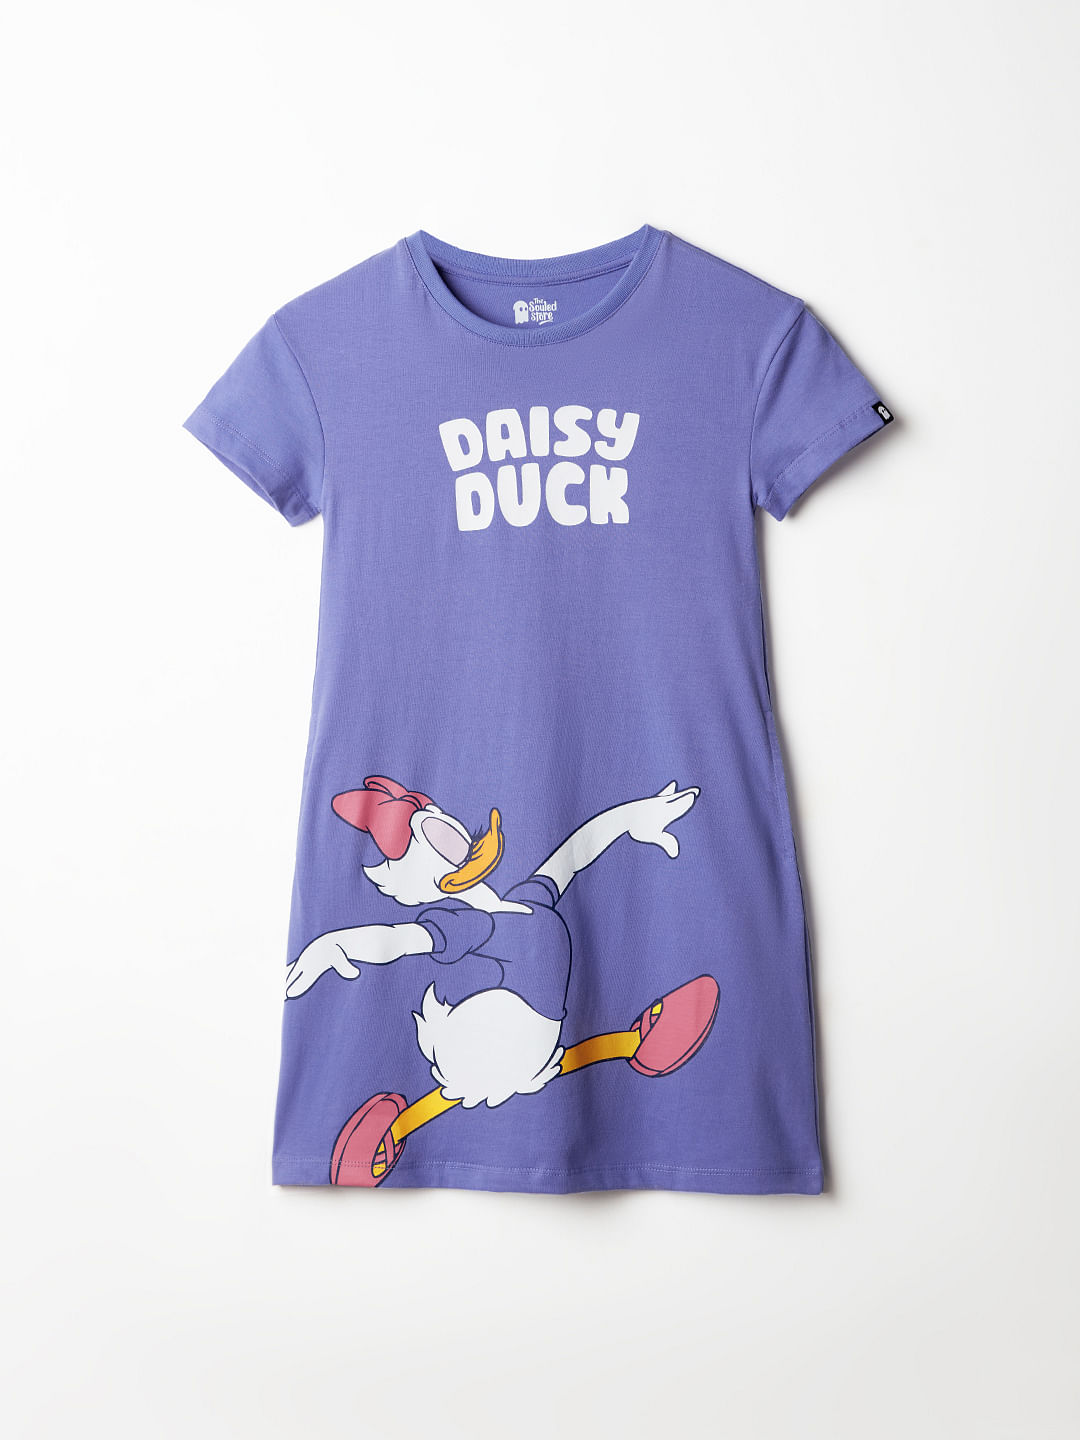 Buy Disney Daisy Duck Girls T Shirt Dress Online